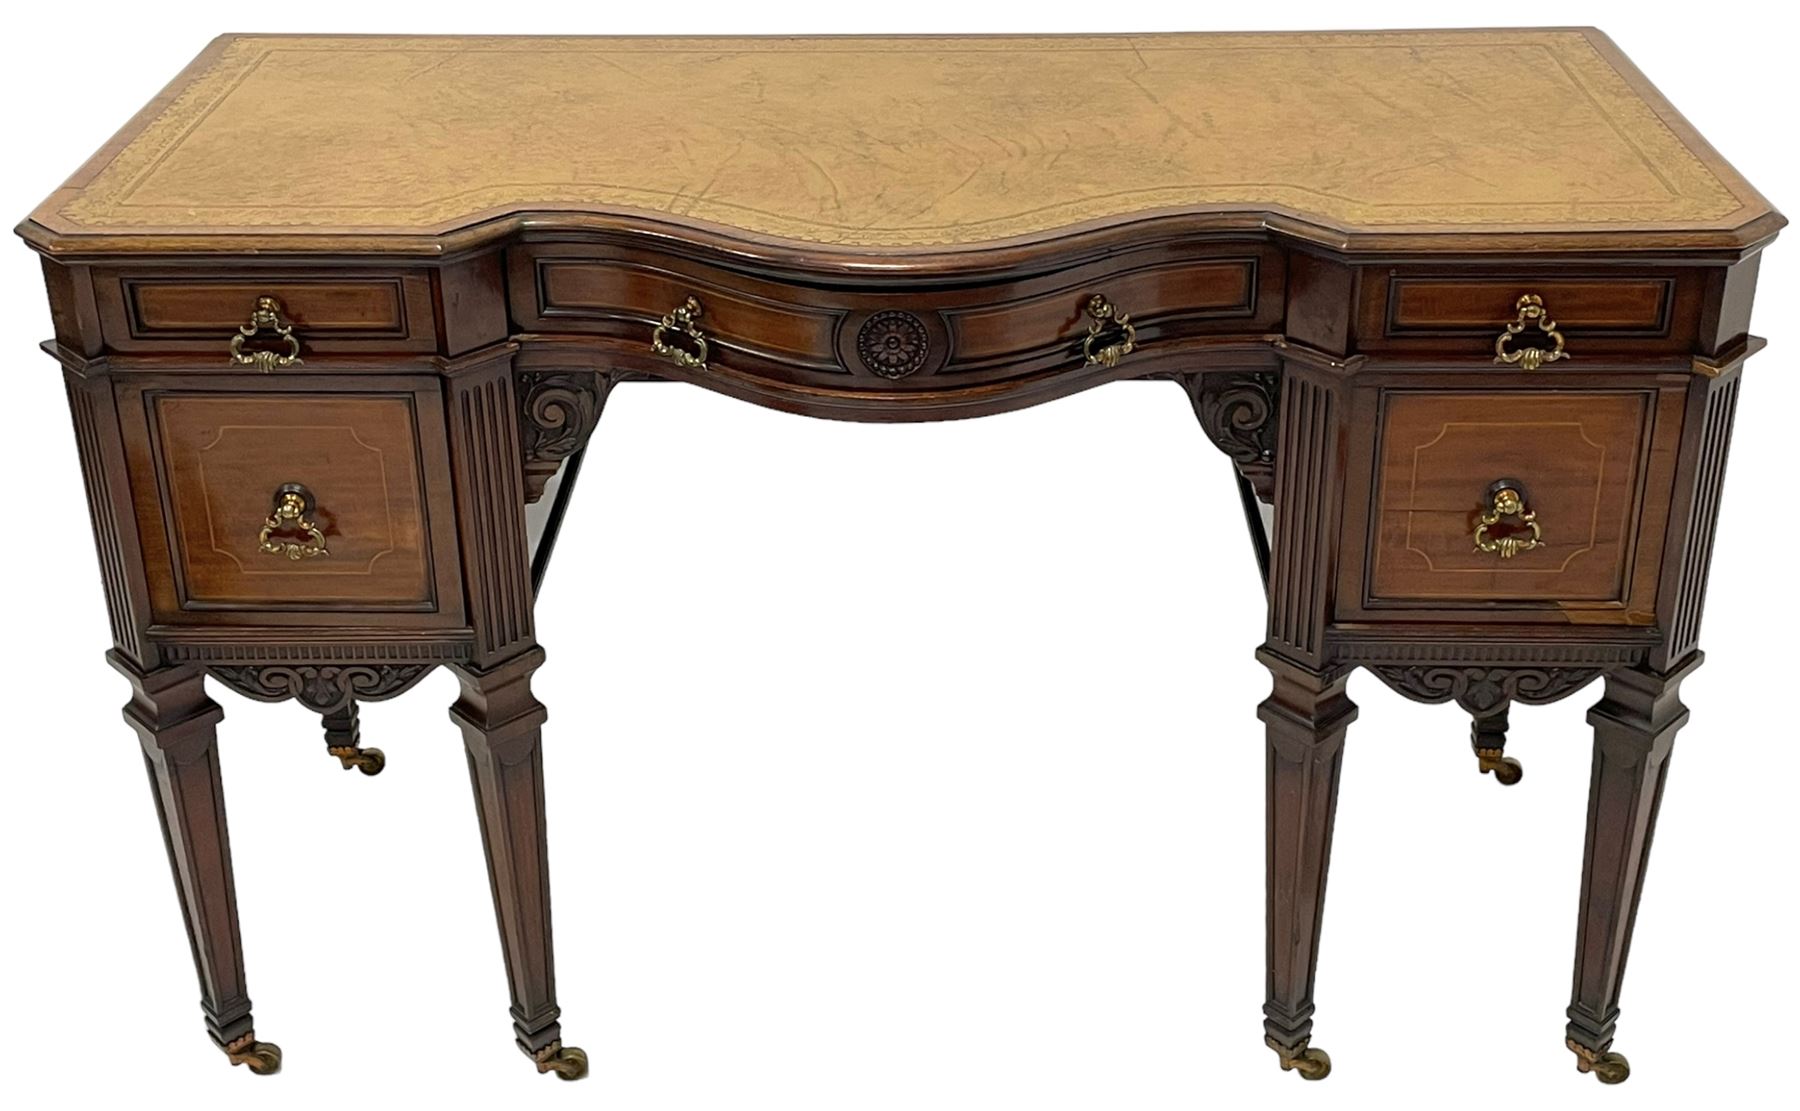 Late 19th century mahogany writing desk